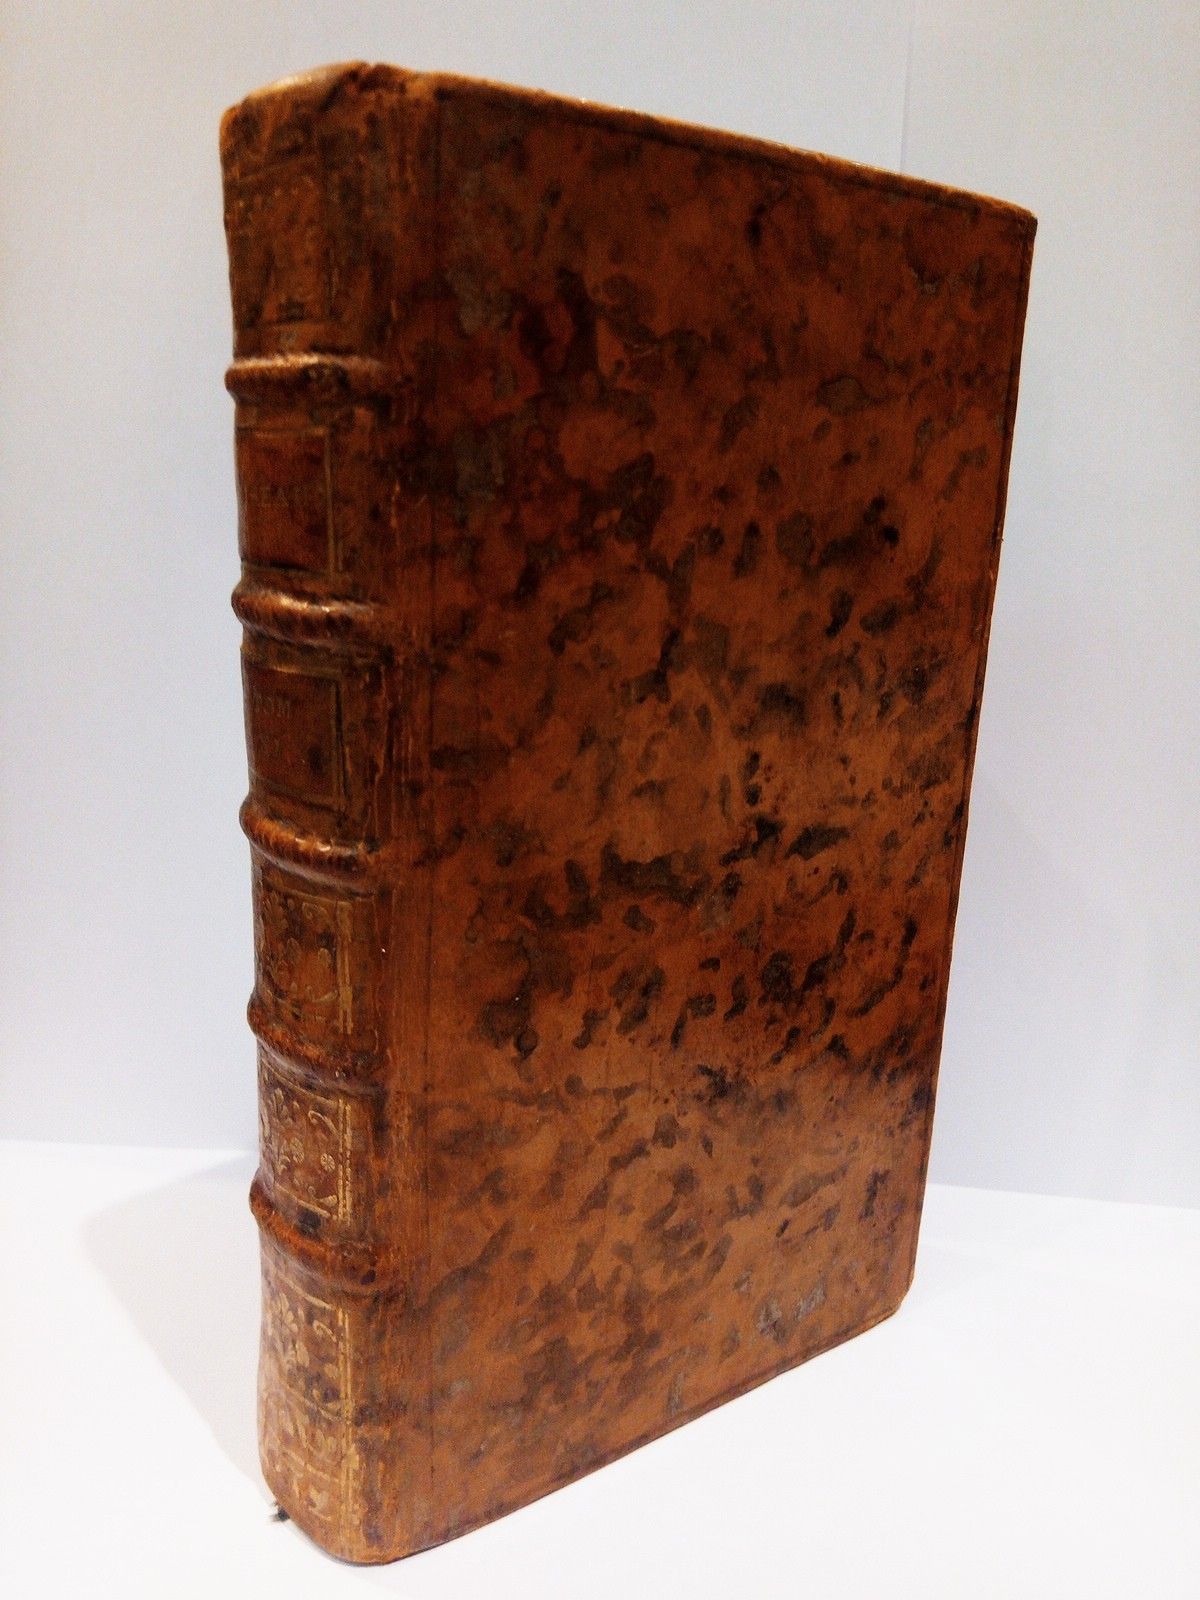 BUFFON, M. de [Georges Louis Leclerc, conde de Buffon, 1707 - 1788] - Histoire Naturelle des Oiseaux. (Tome Onzime)